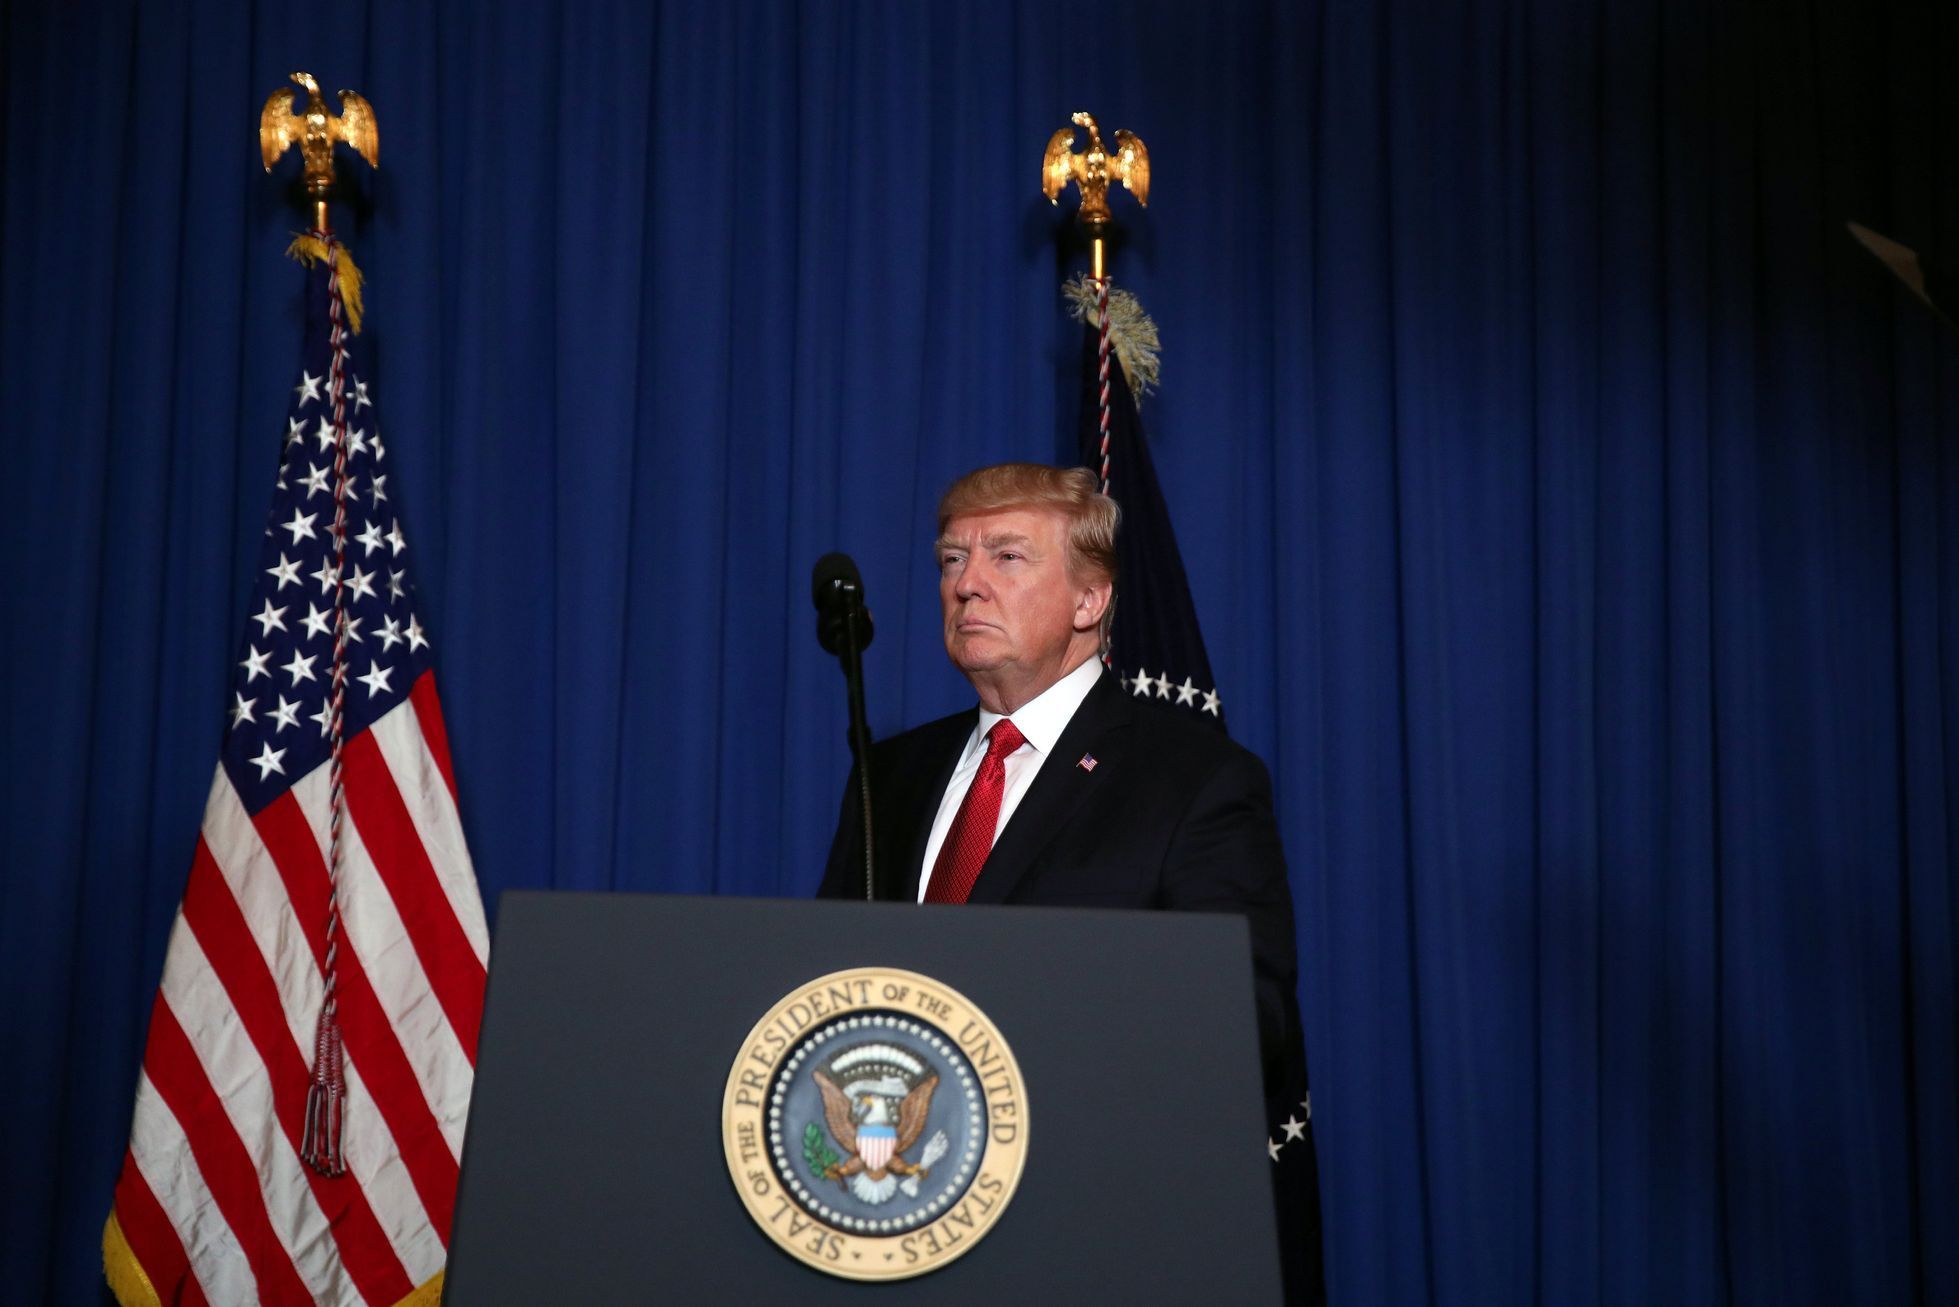 Donald Trump, vyjádření k útoku v Sýrii